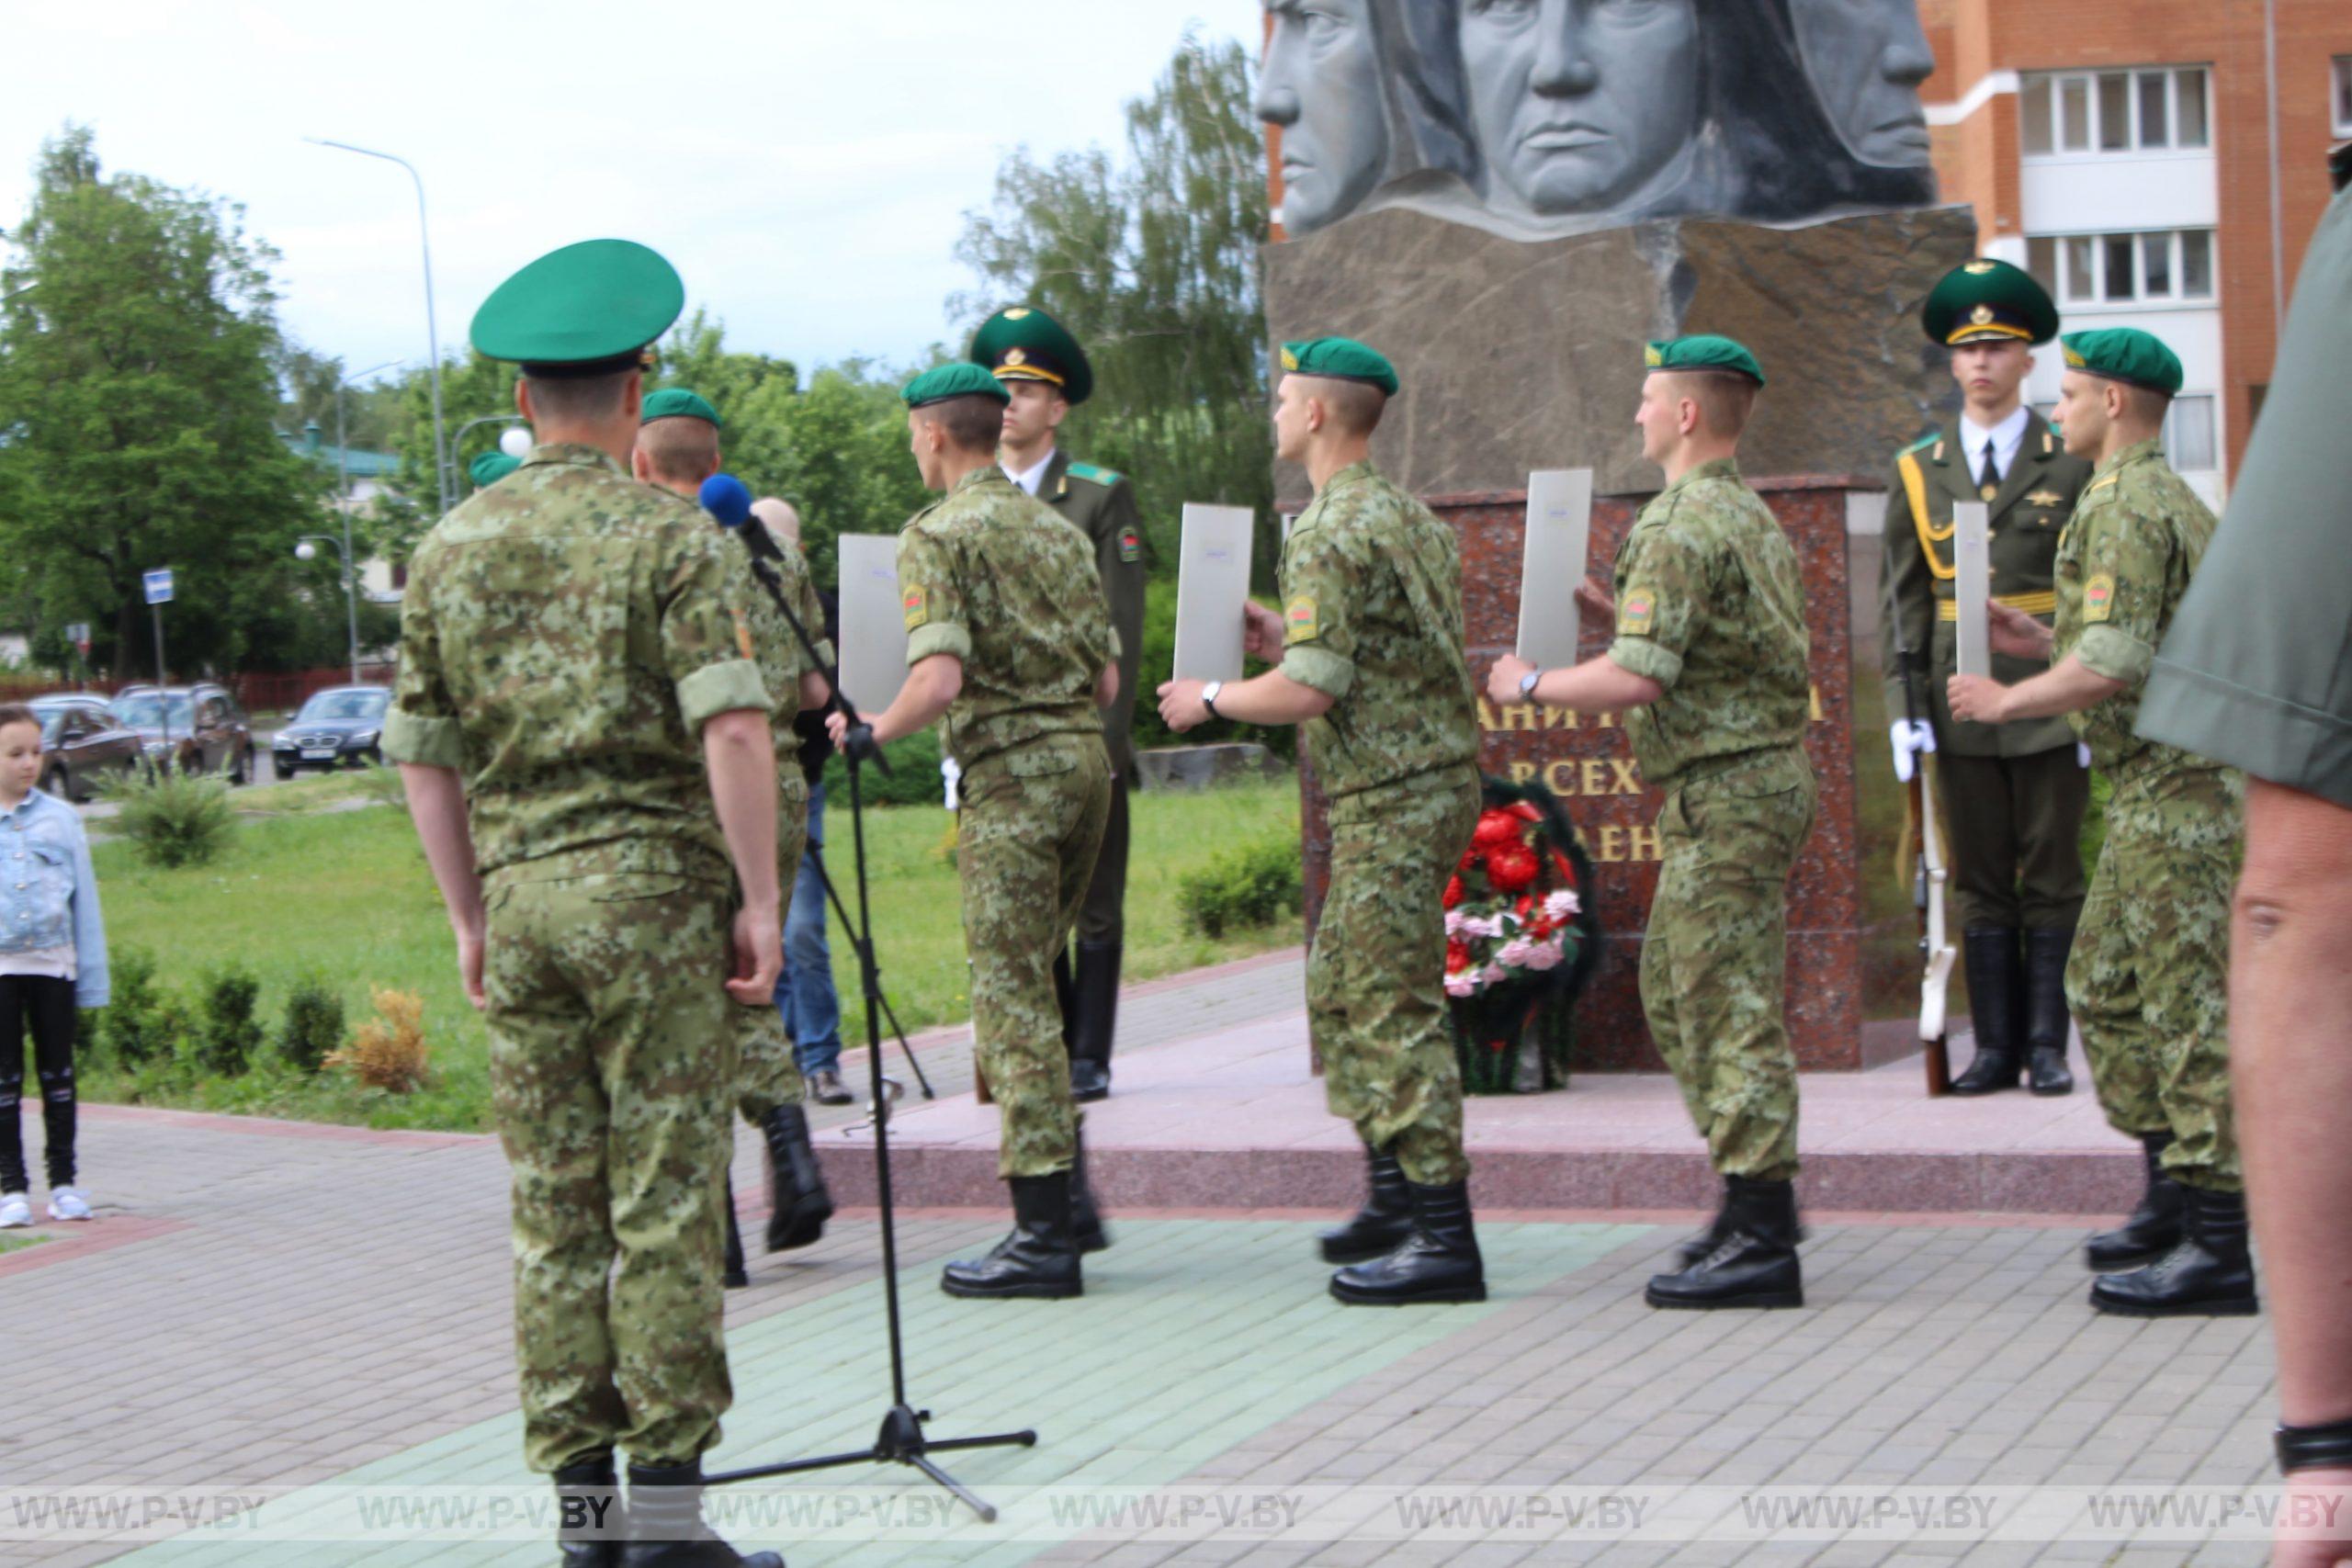 Вчера в Пинске почтили память пограничников, погибших в первые дни войны